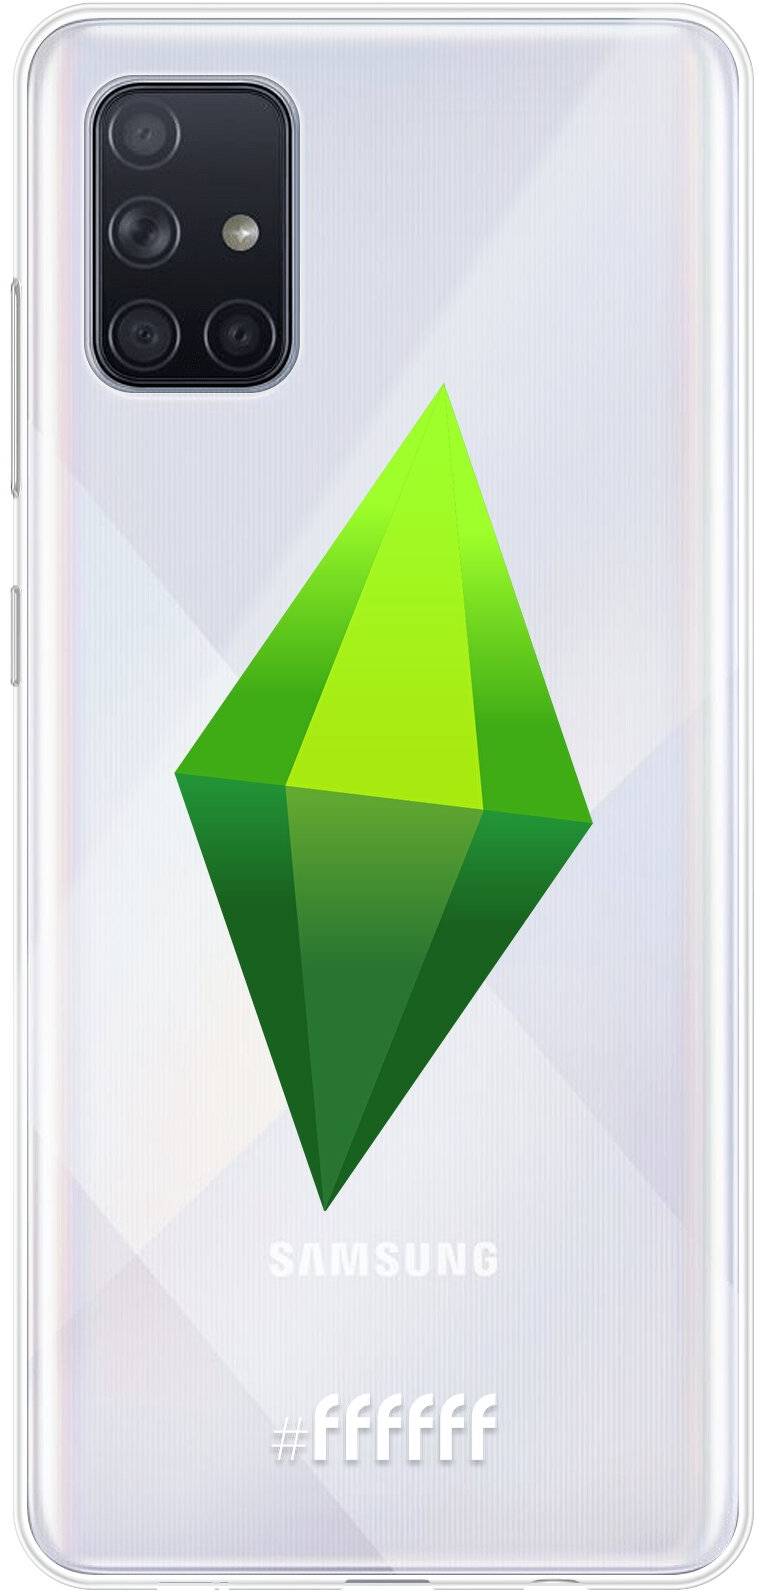 The Sims Galaxy A71